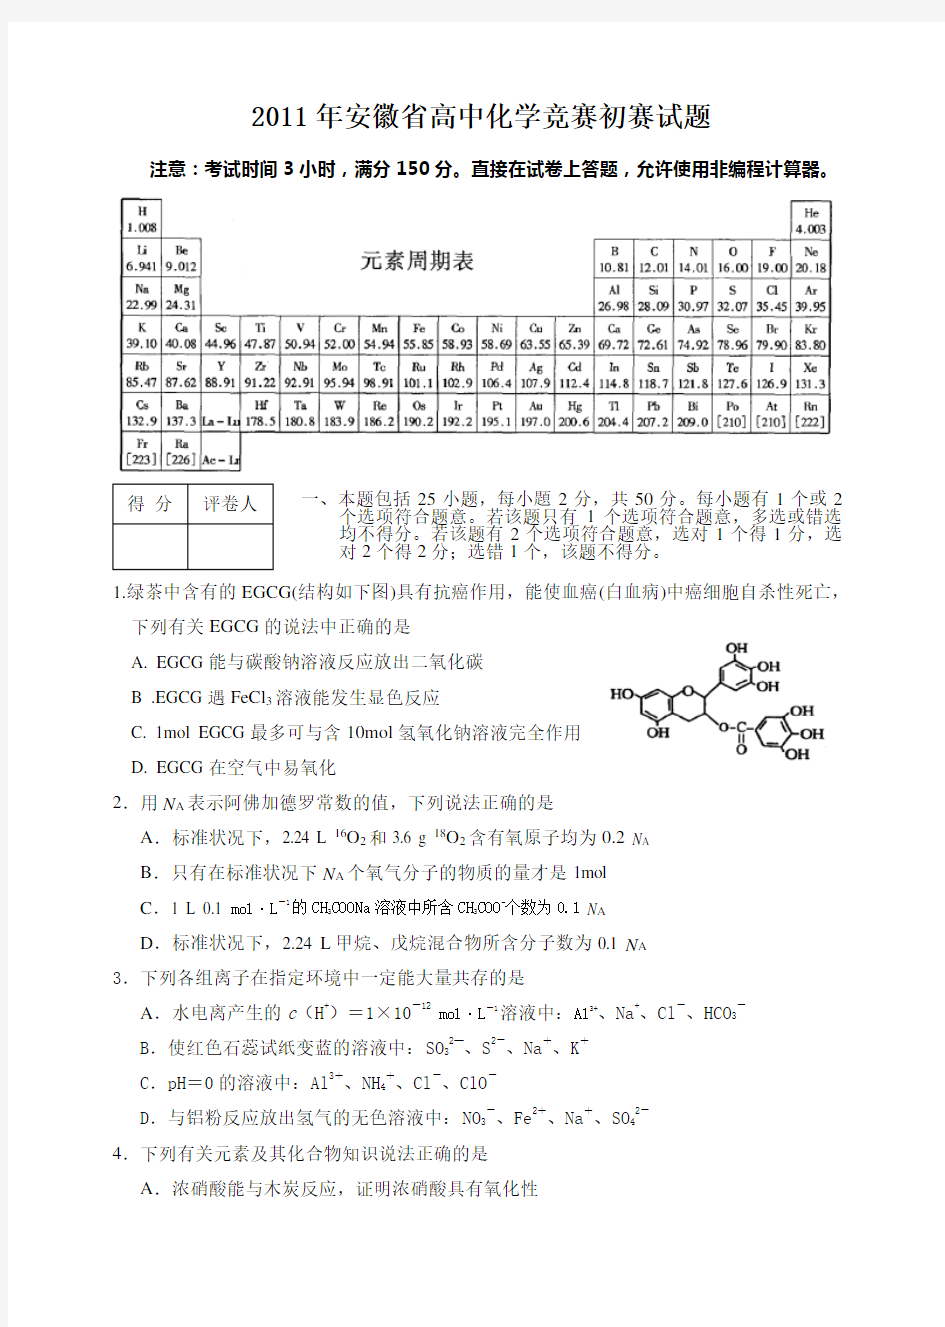 安徽省高中化学竞赛初赛试题及答案